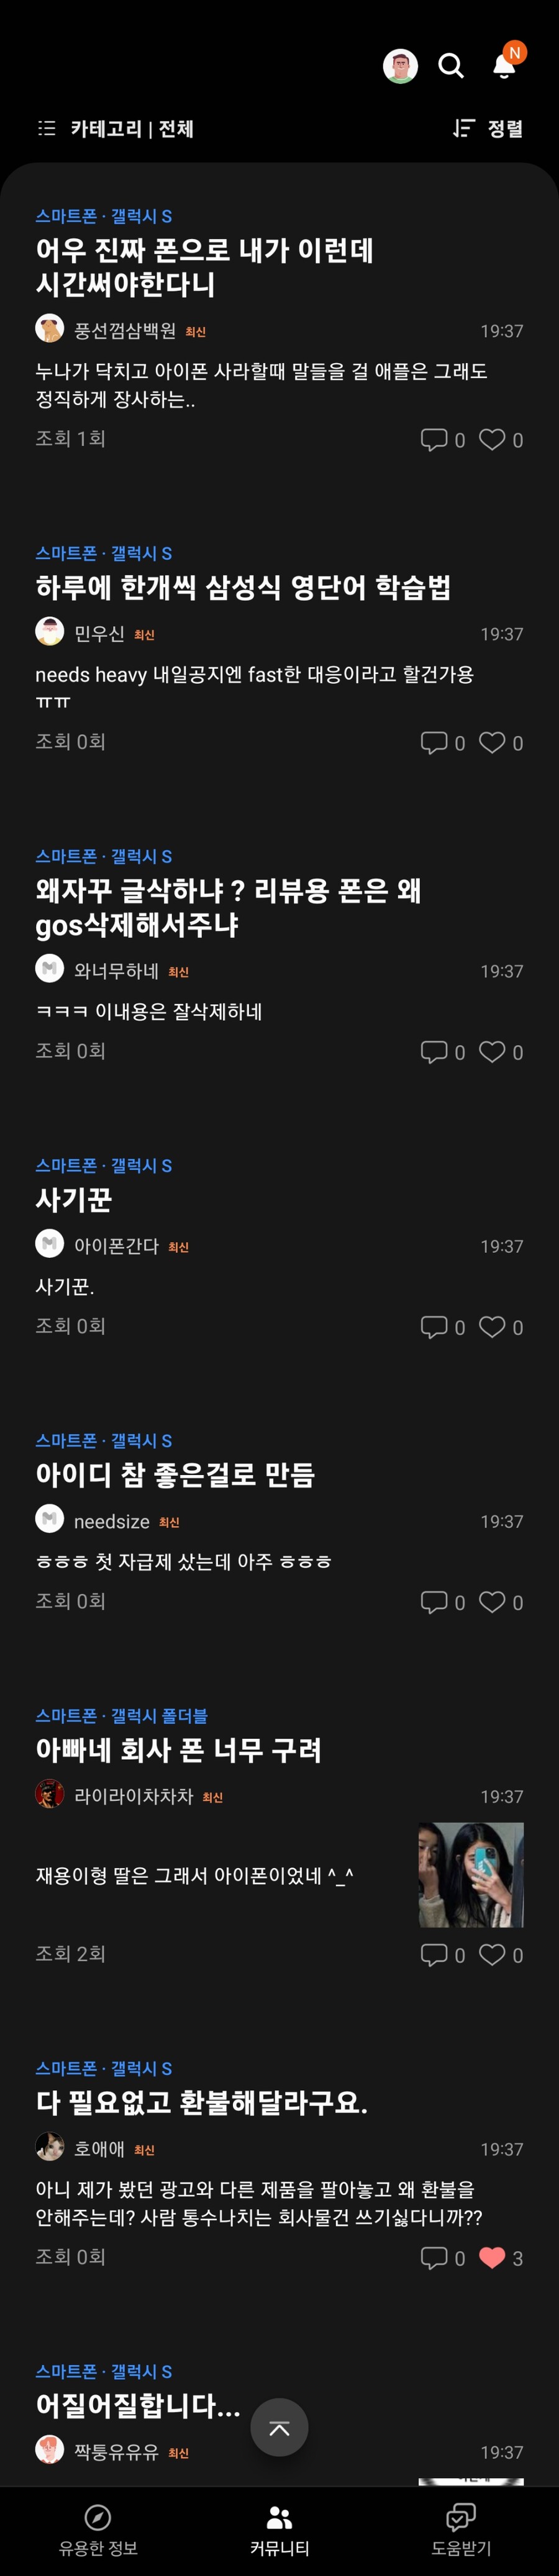 삼성 멤버스 커뮤니티